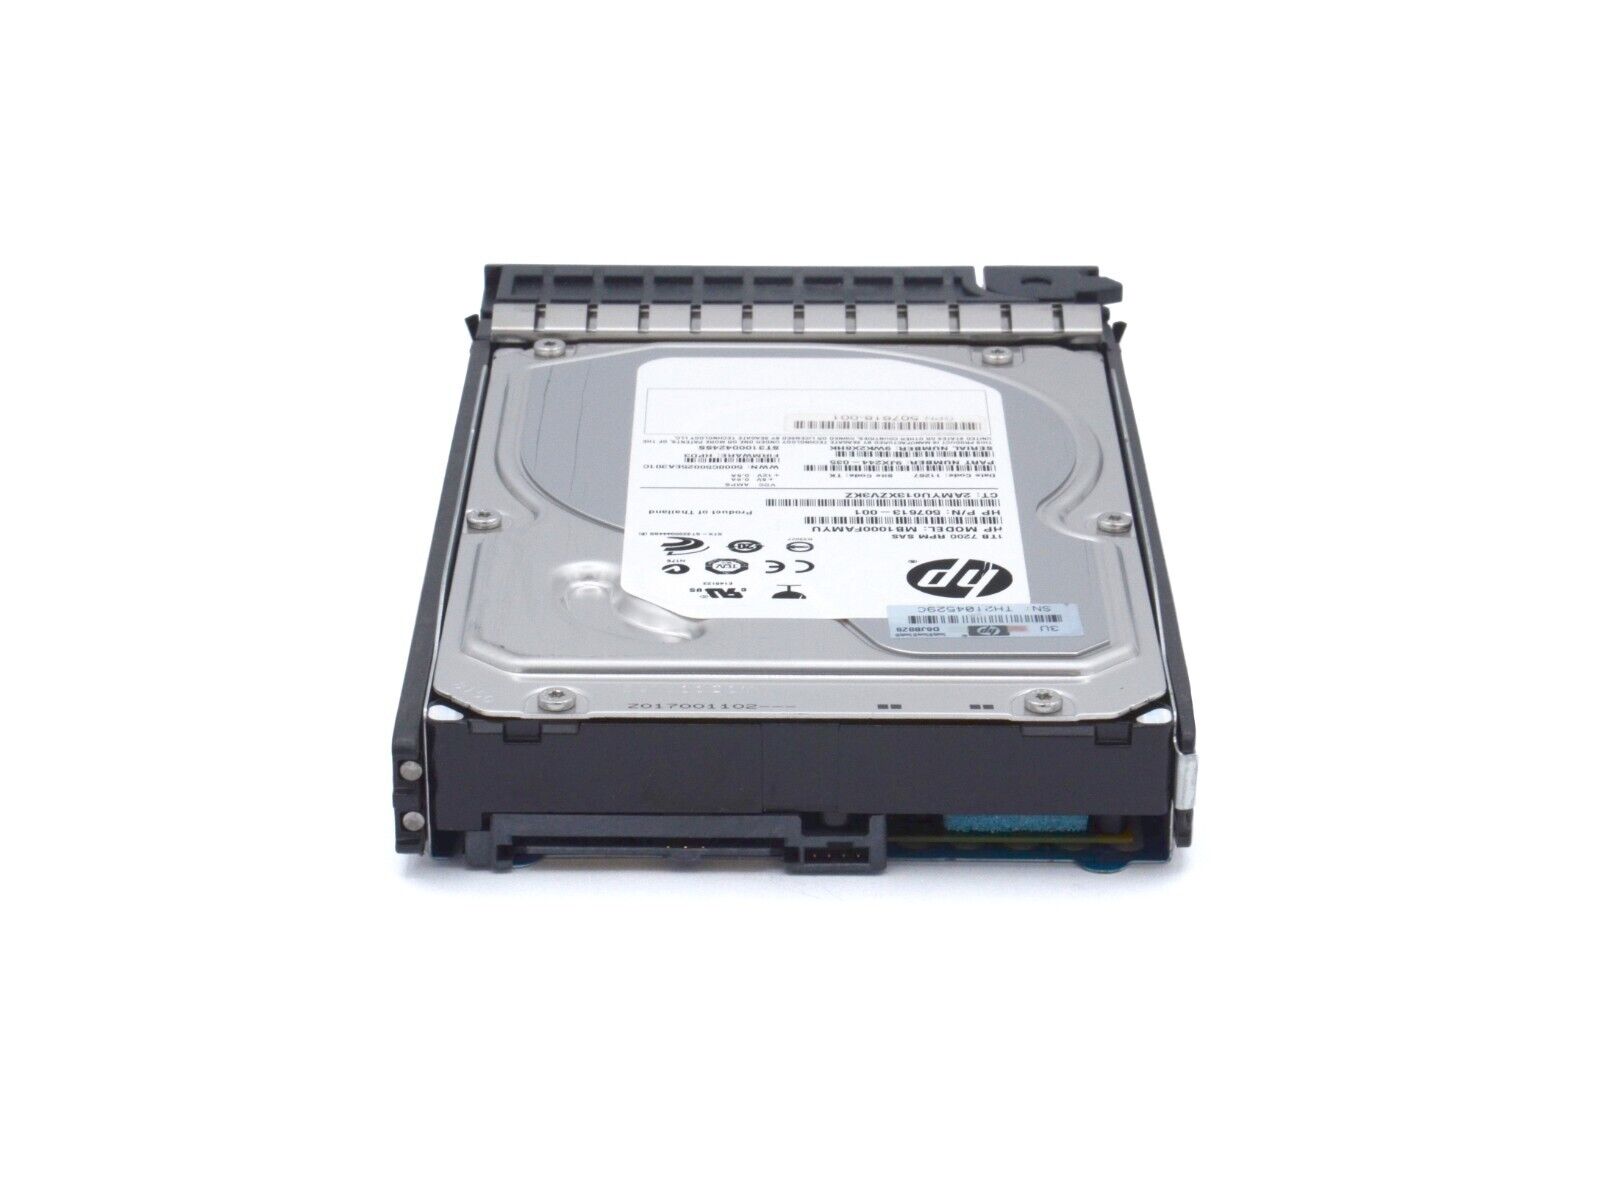 HP 508011-001 Seagate 1TB 7.2K 6 Gb/s SAS MDL LFF 3.5" DP HDD Hard Disk Drive